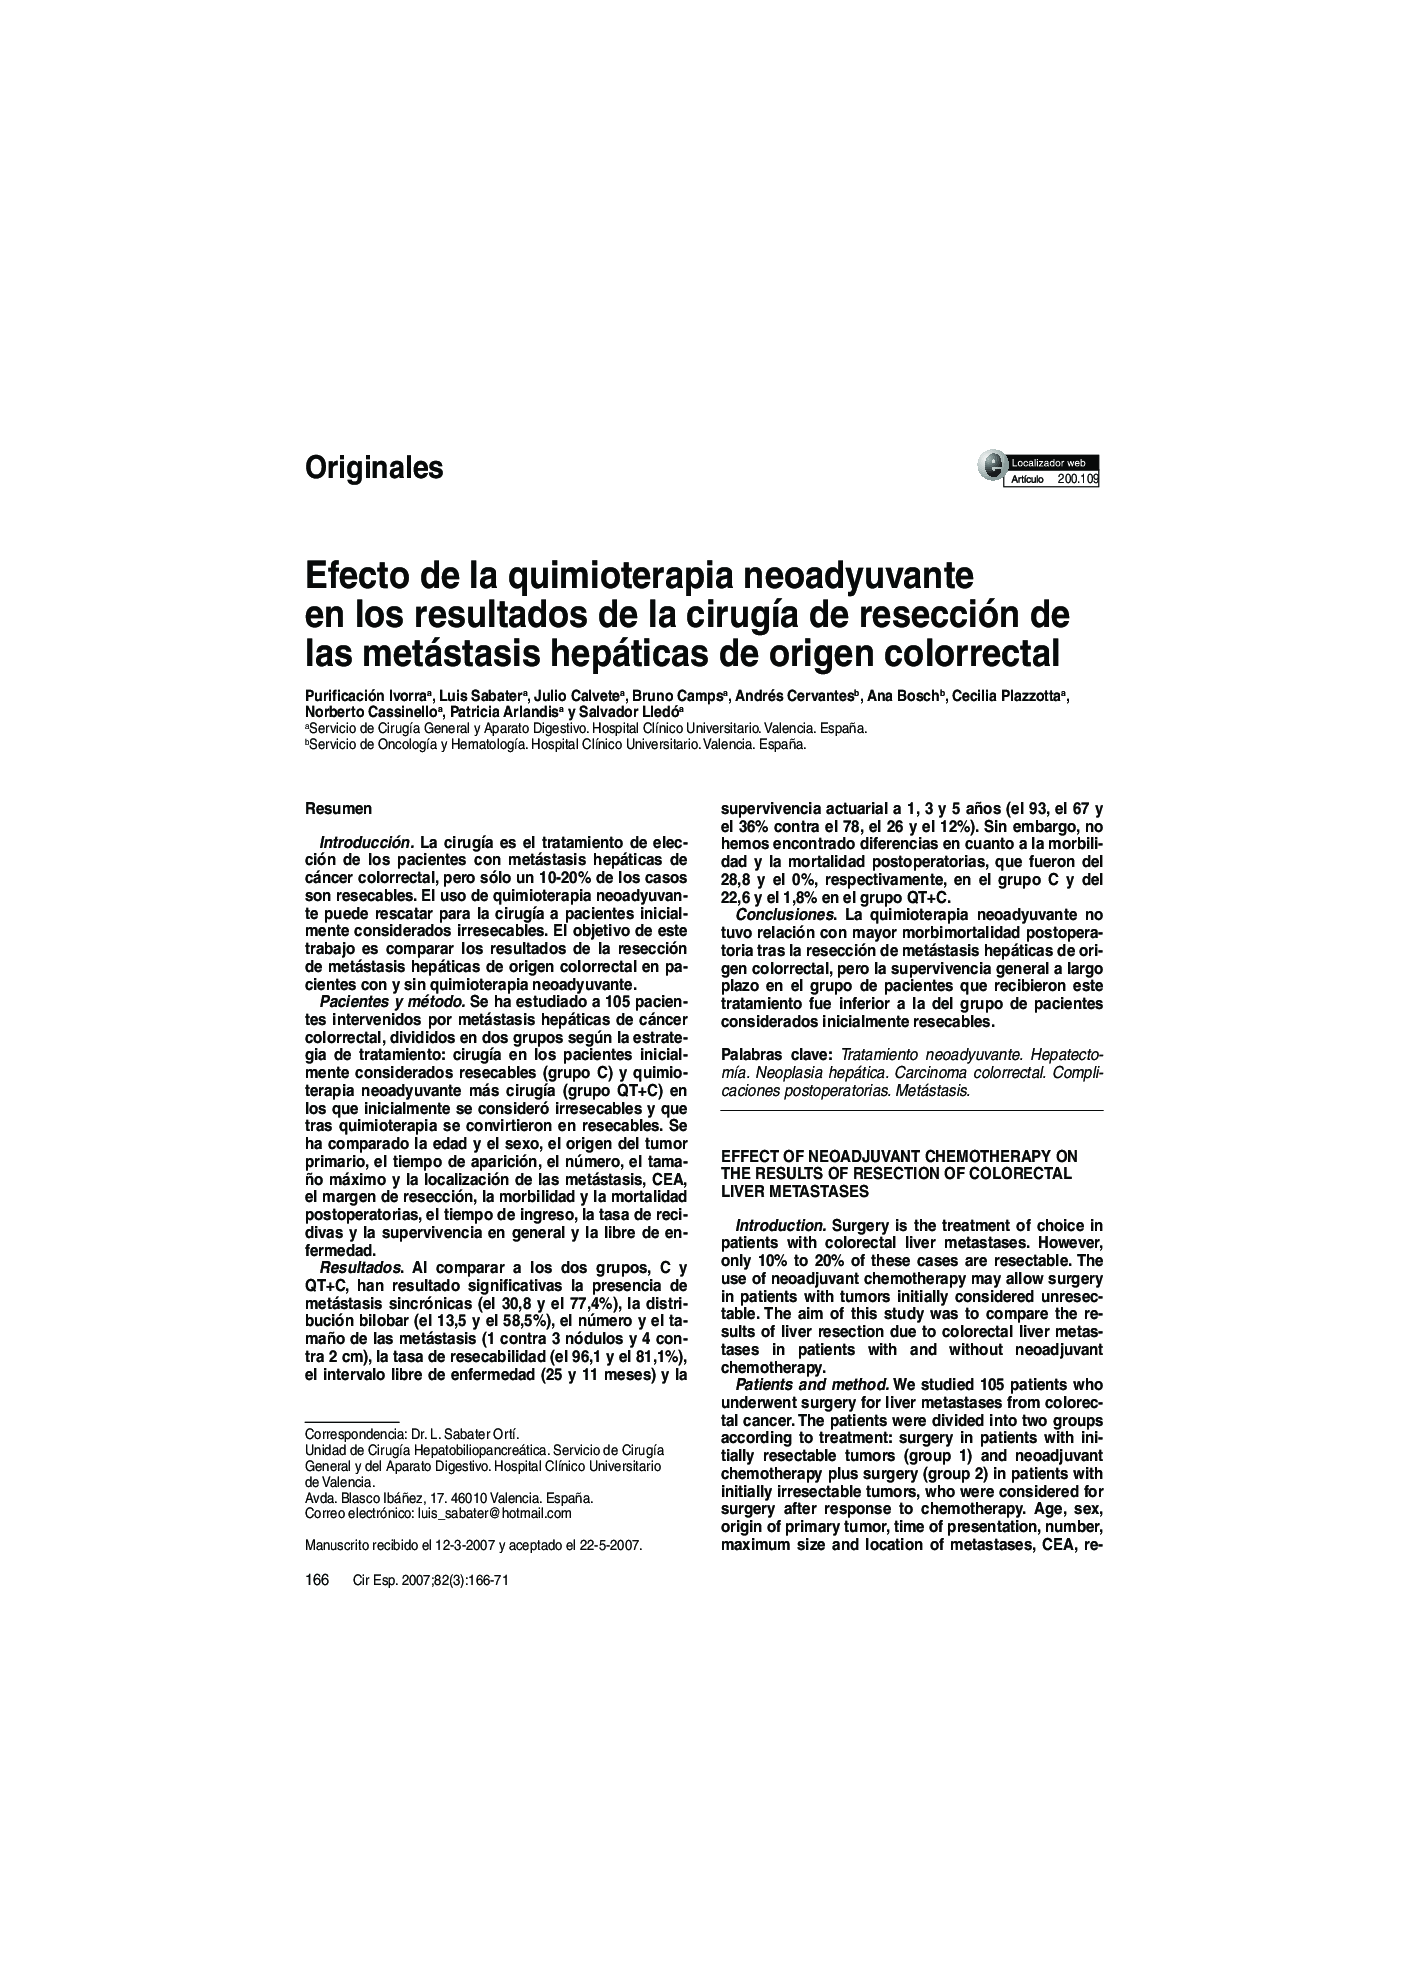 Efecto de la quimioterapia neoadyuvante en los resultados de la cirugÃ­a de resección de las metástasis hepáticas de origen colorrectal